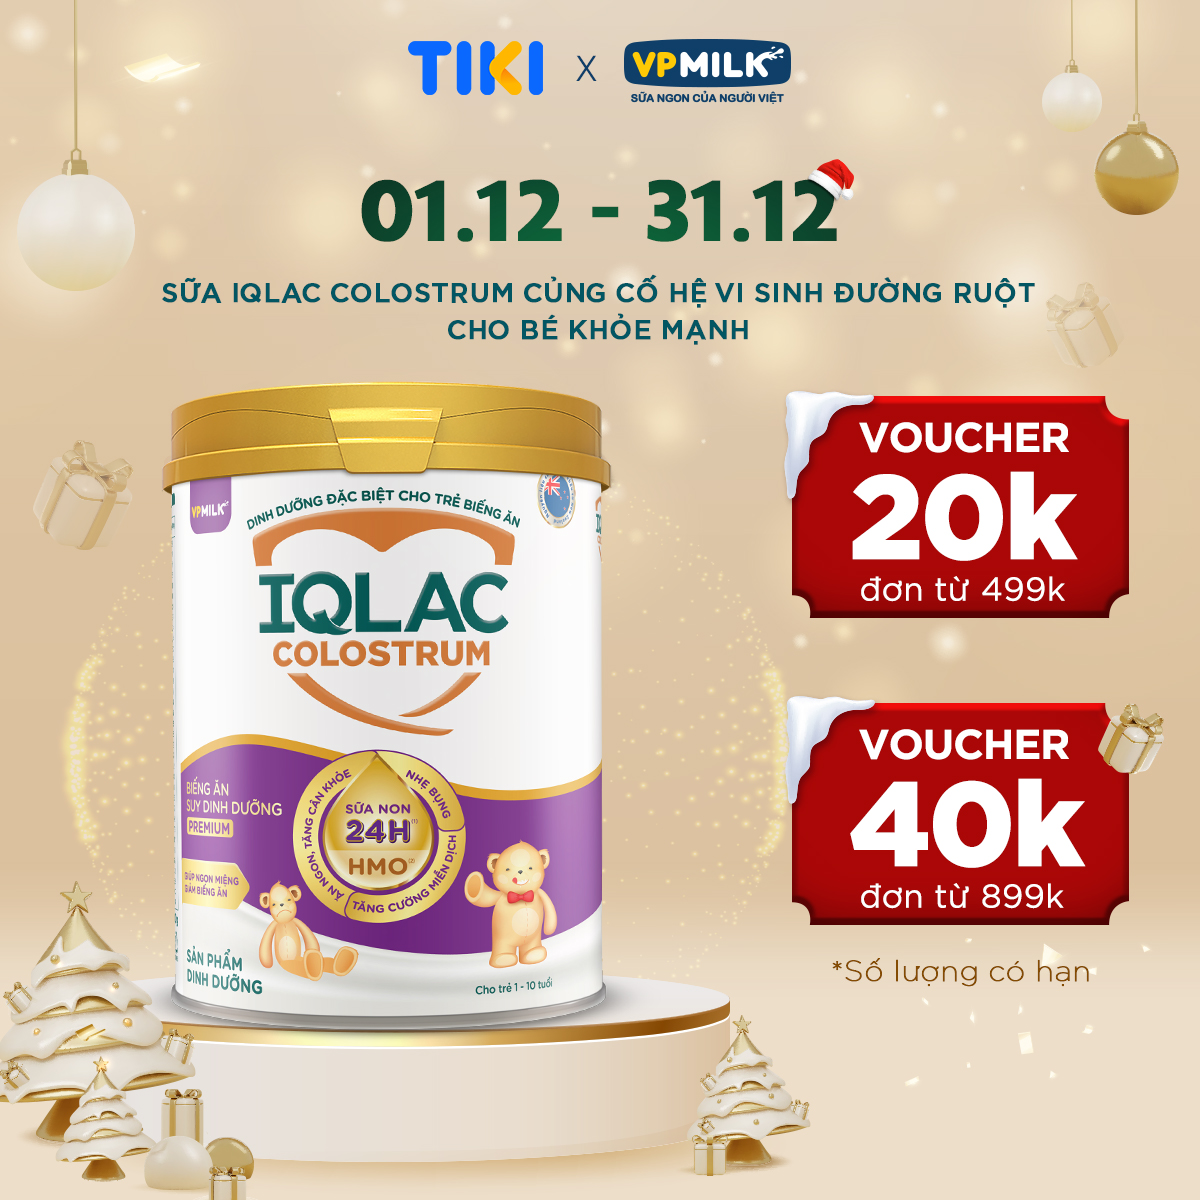 Sữa bột IQLac Colostrum Biếng Ăn Suy Dinh Dưỡng Premium 800g cho trẻ biếng ăn, thấp còi, suy dinh dưỡng (1-10 tuổi)